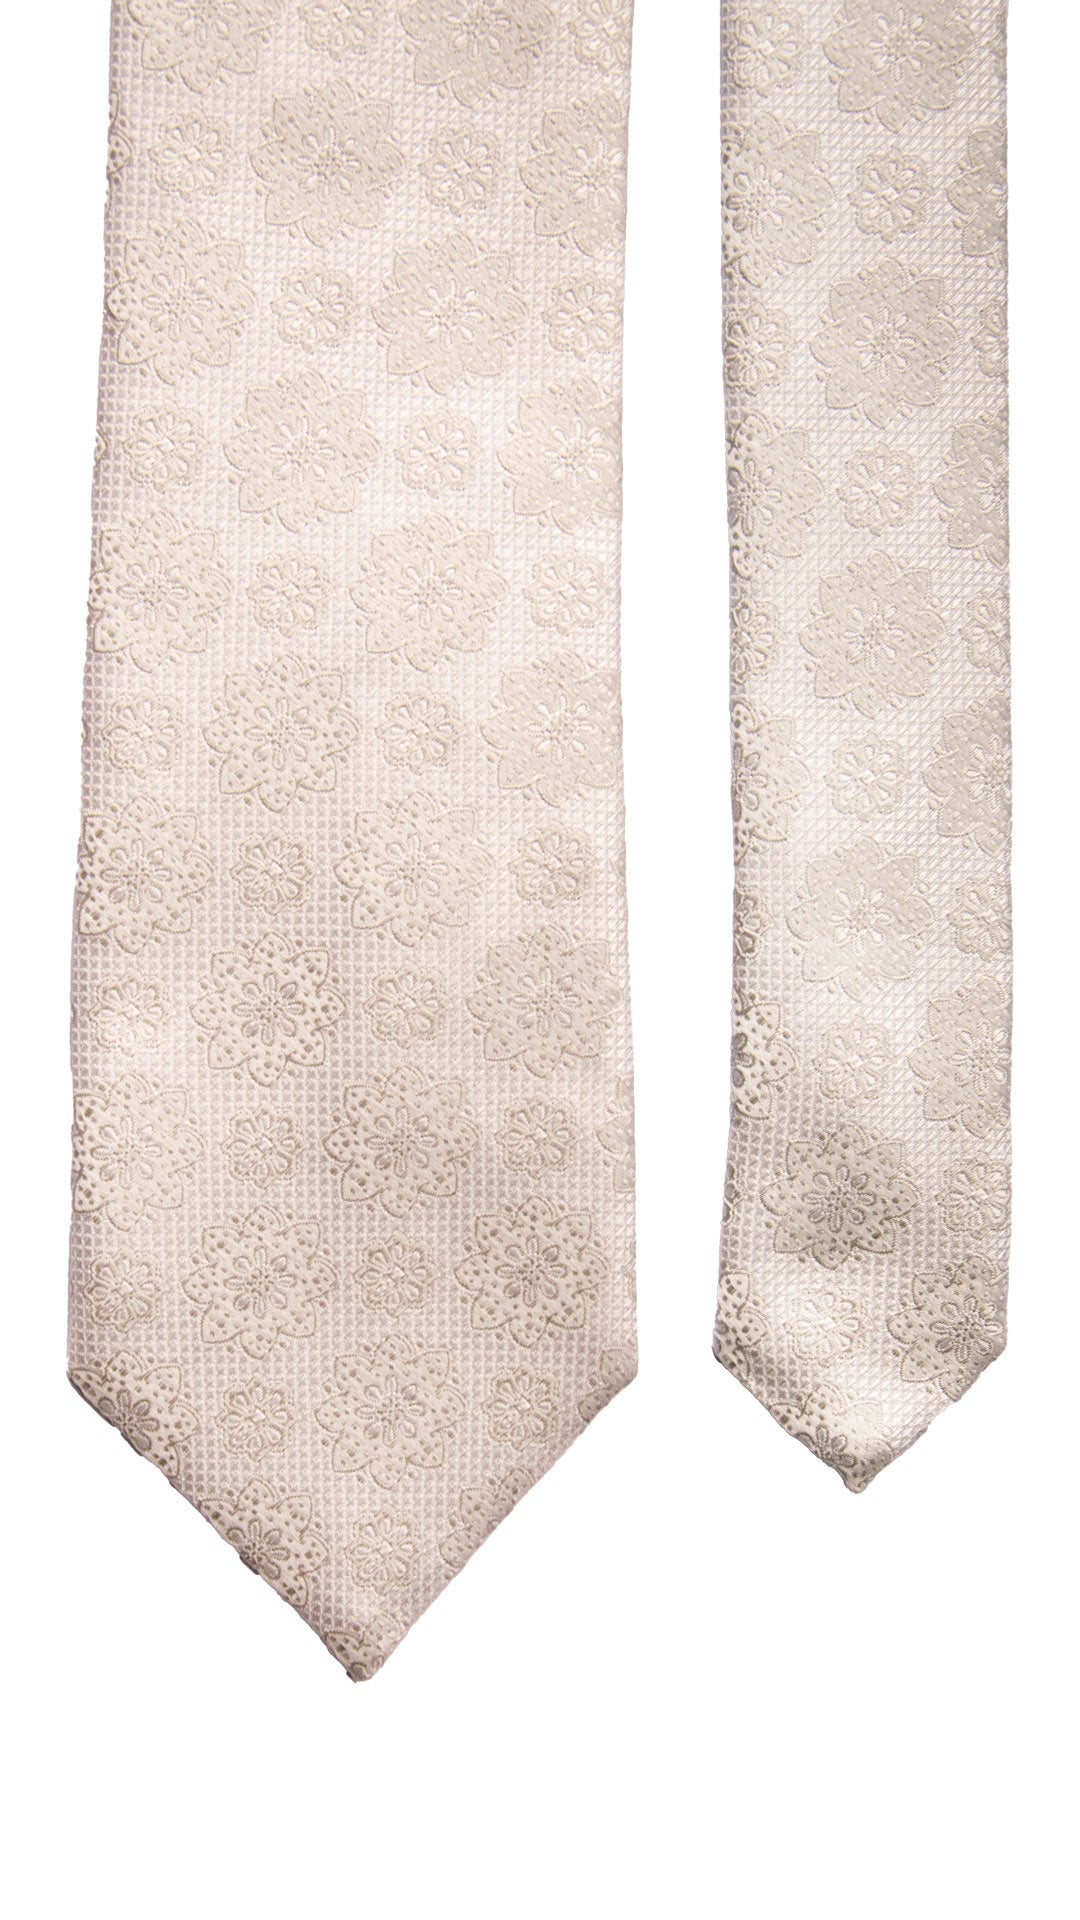 Cravatta da Cerimonia di Seta Bianco Perla a Medaglioni Grigio Argento CY6669 Pala